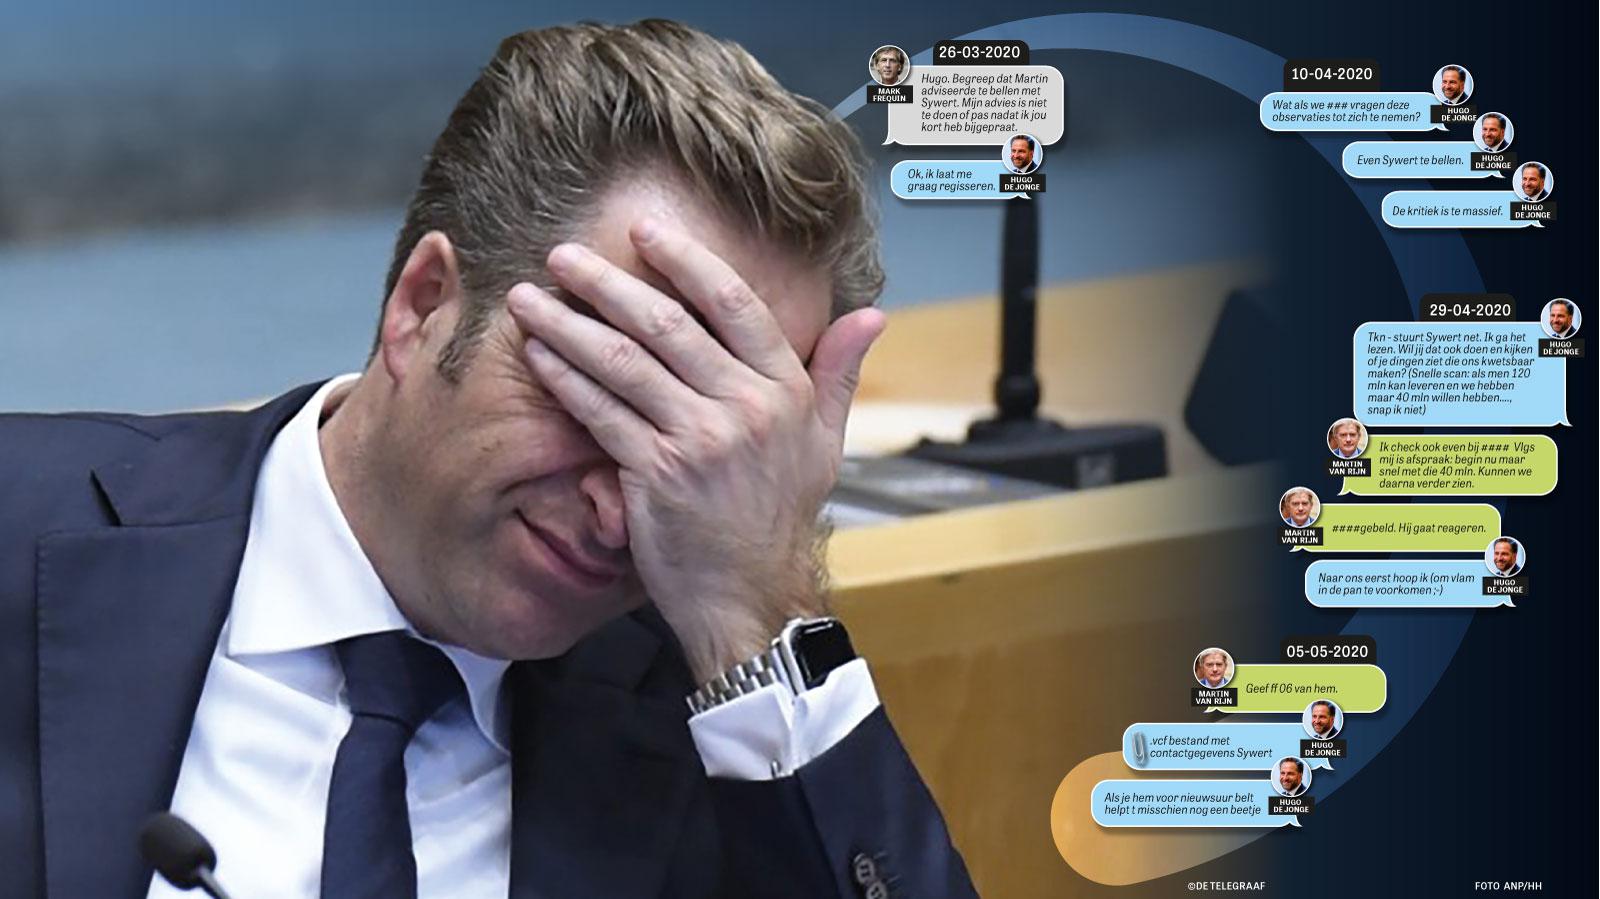 Hugo de Jonge trekt boetekleed aan voor mondkapjesdeal | Binnenland | Telegraaf.nl